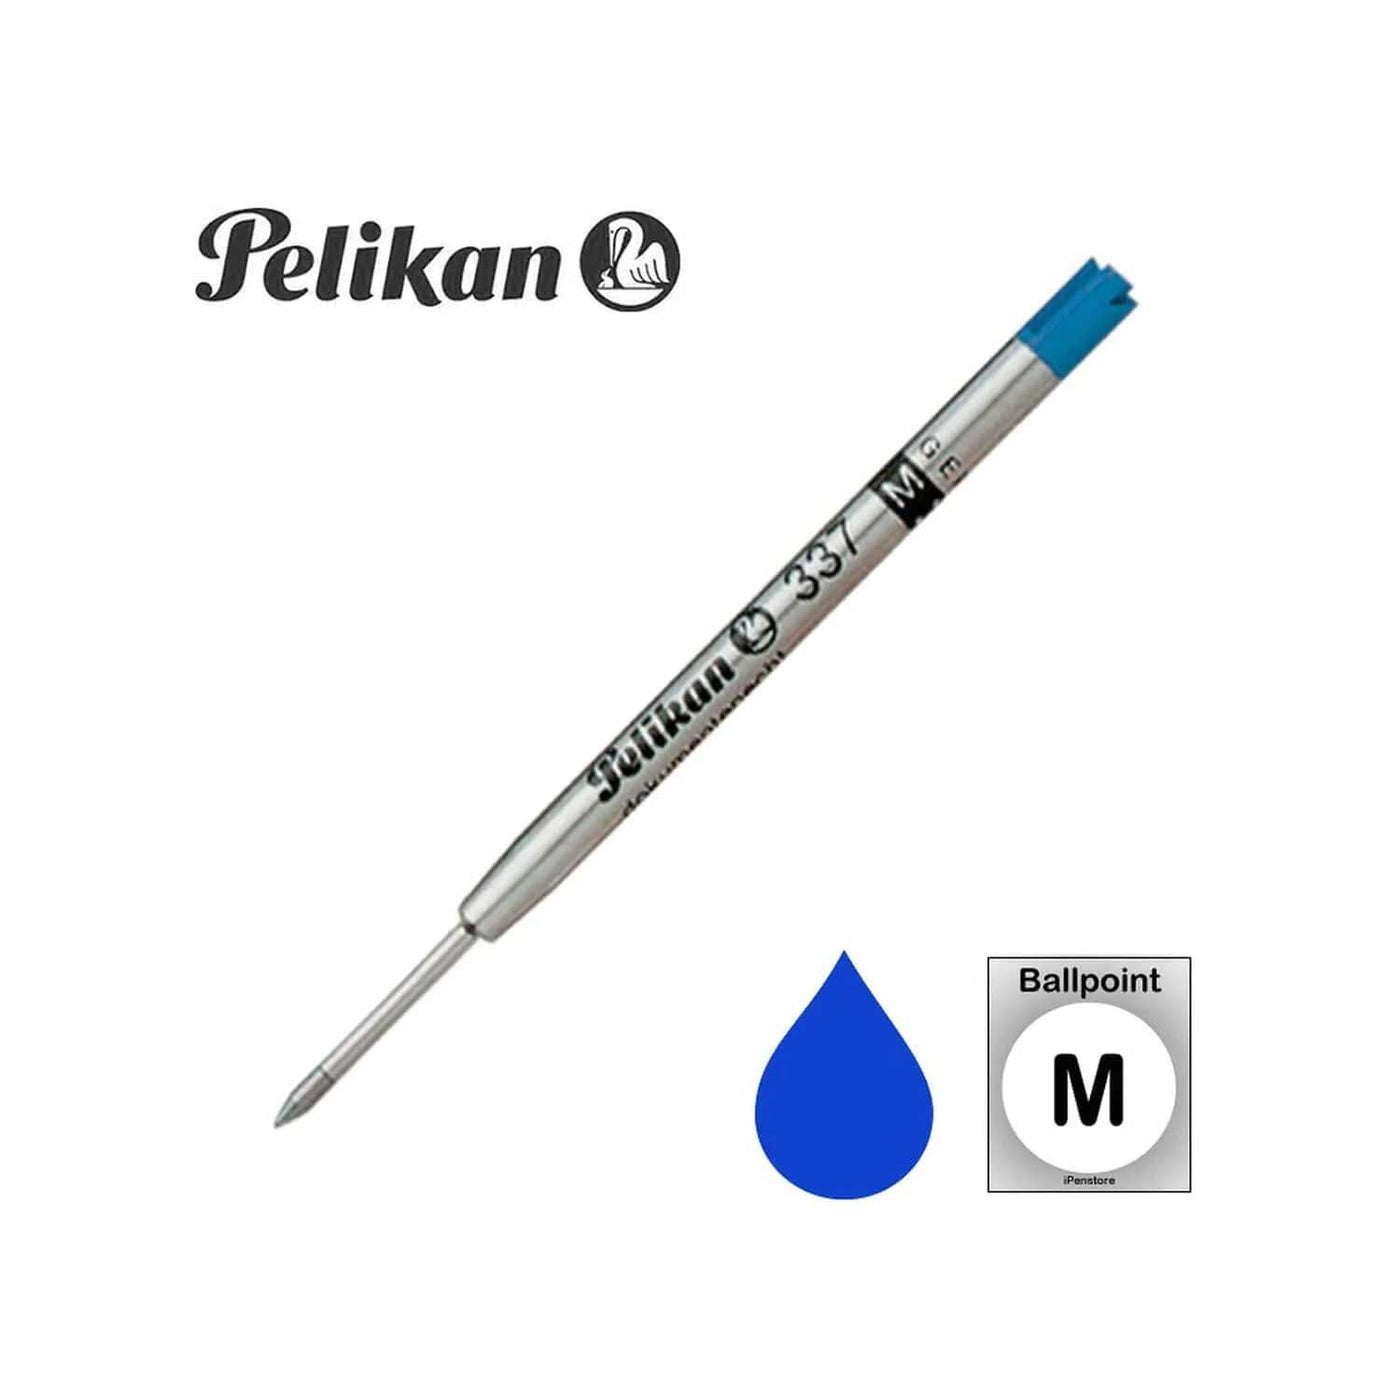 Pelikan Ball Pen Refill, Blue